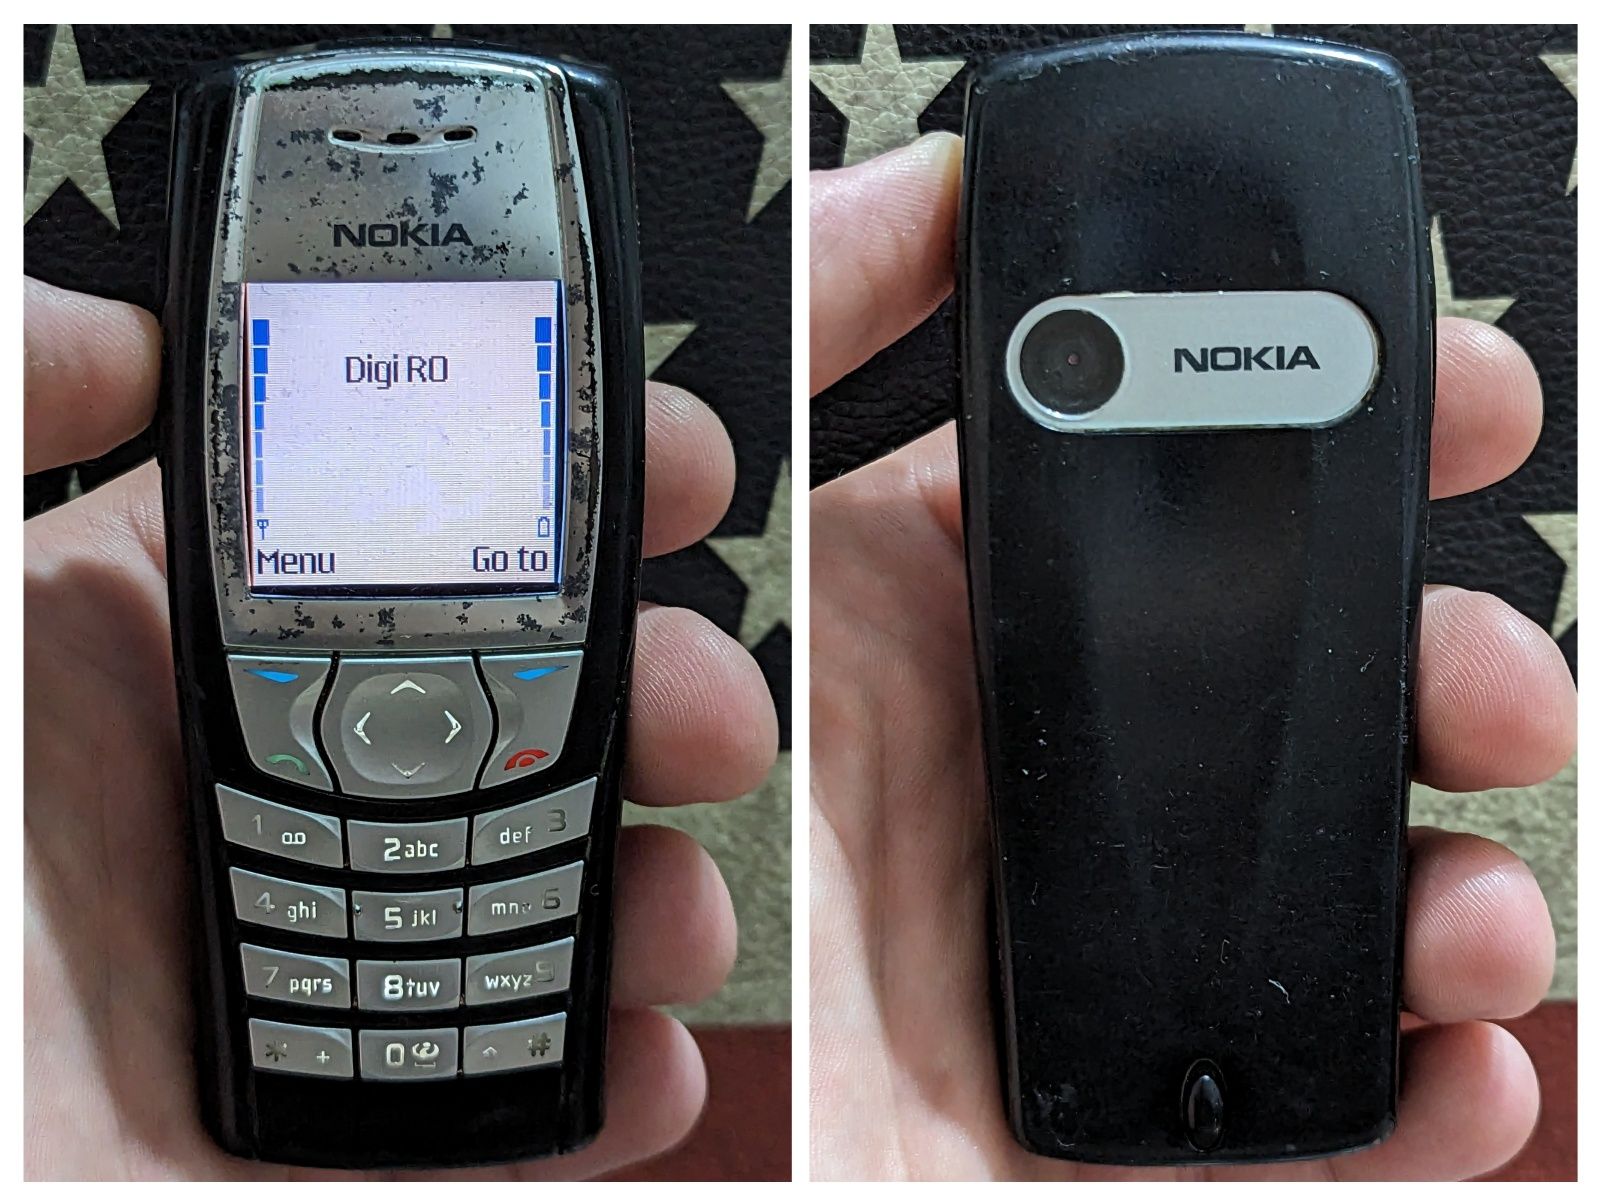 Nokia 6111, 6120c, 6303, 6610i, 6234, Motorola V3, Sony Ericsson W660i